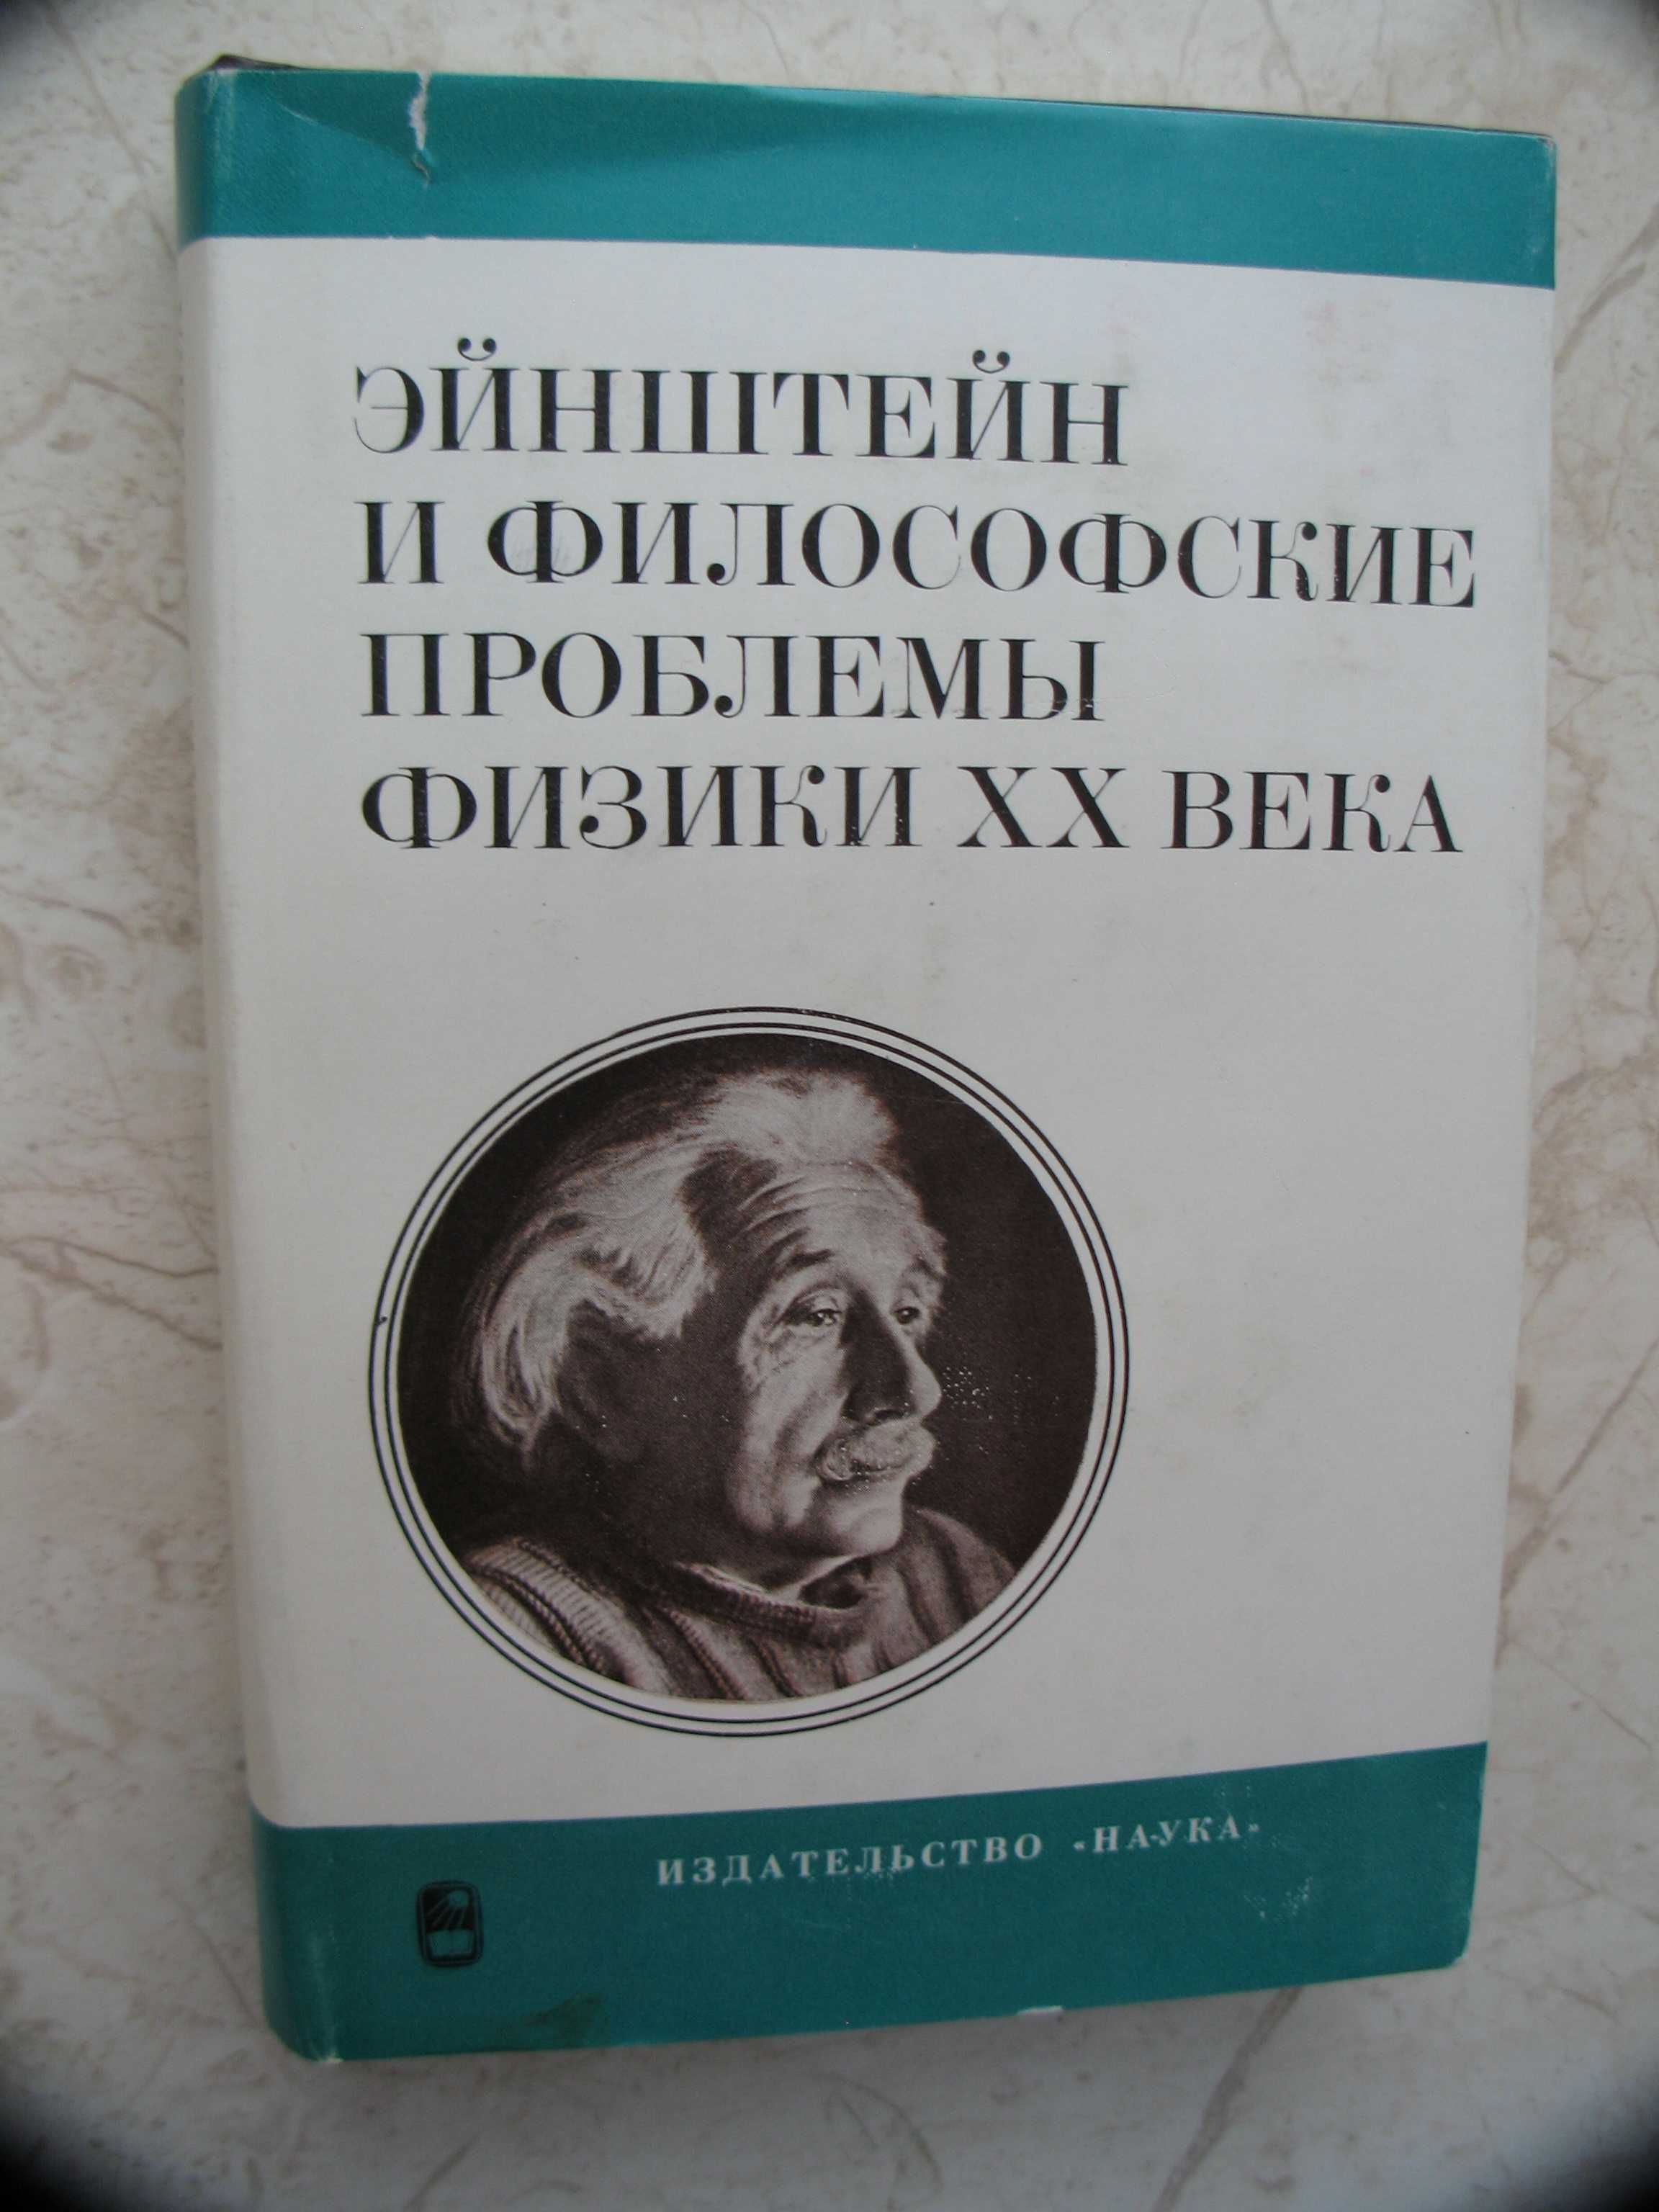 "Эйнштейн и философские проблемы физики XX века" 1979 год